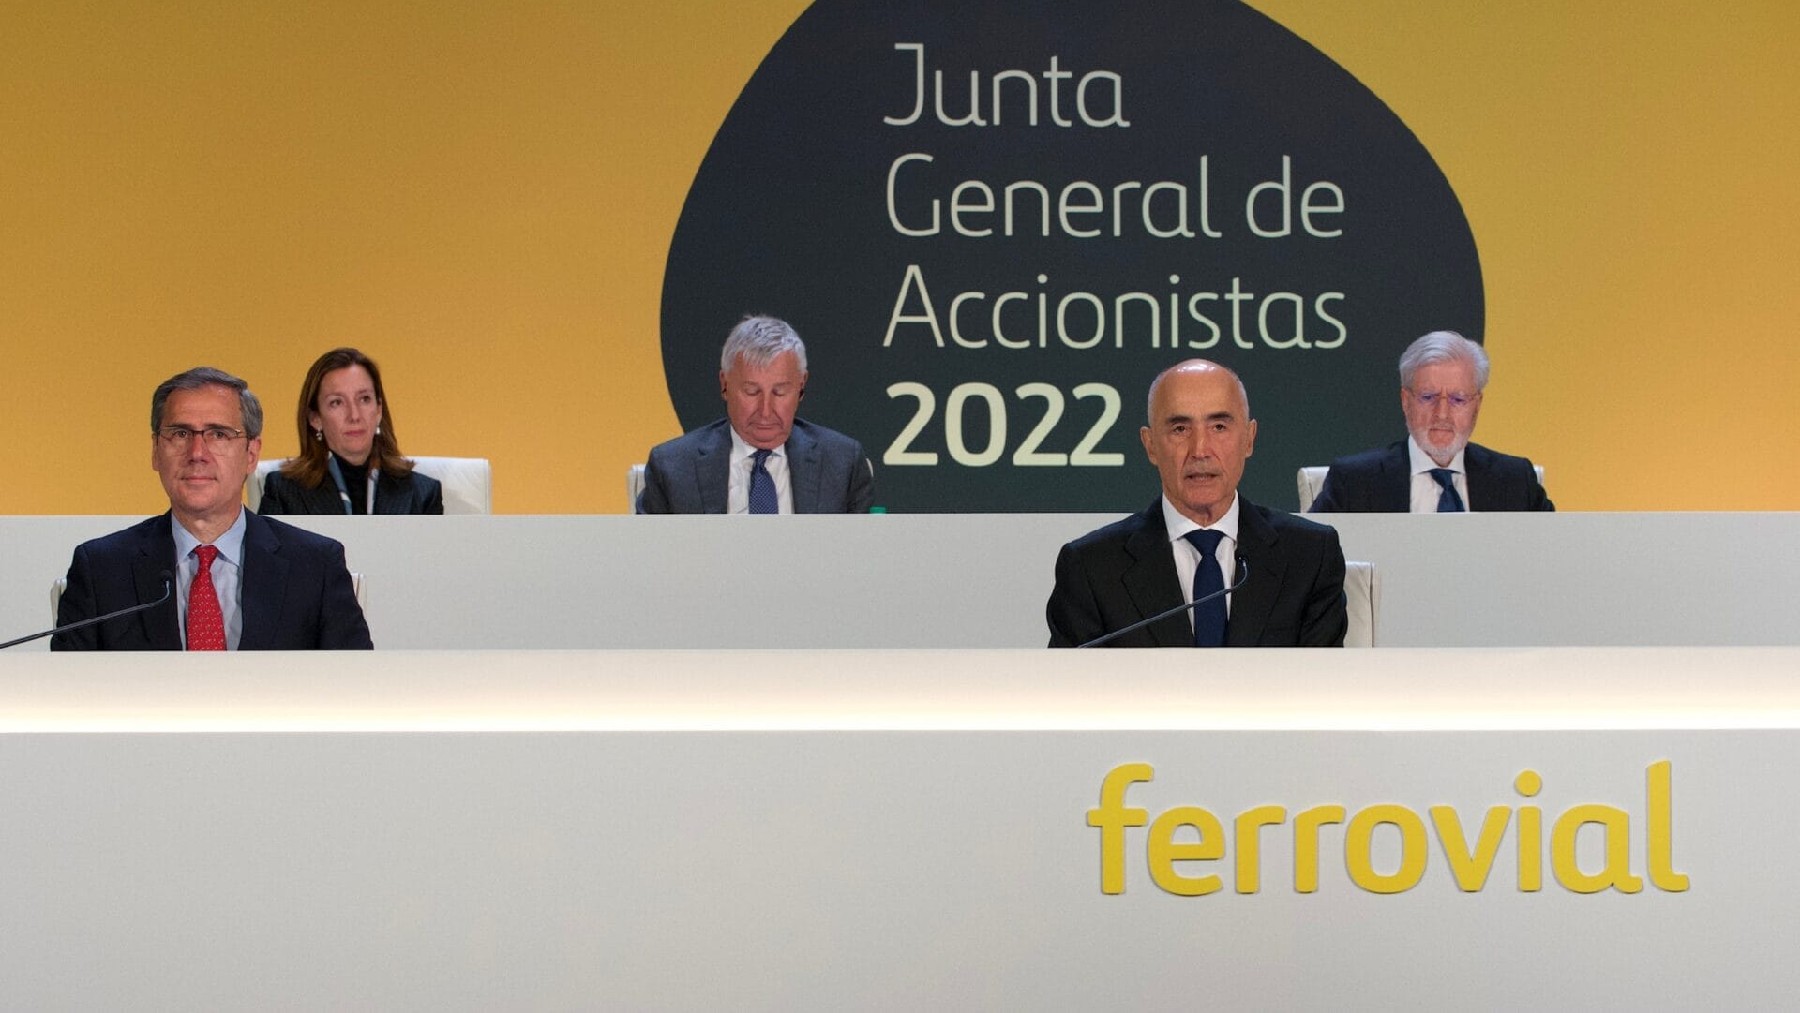 Junta General de Accionistas de Ferrovial.